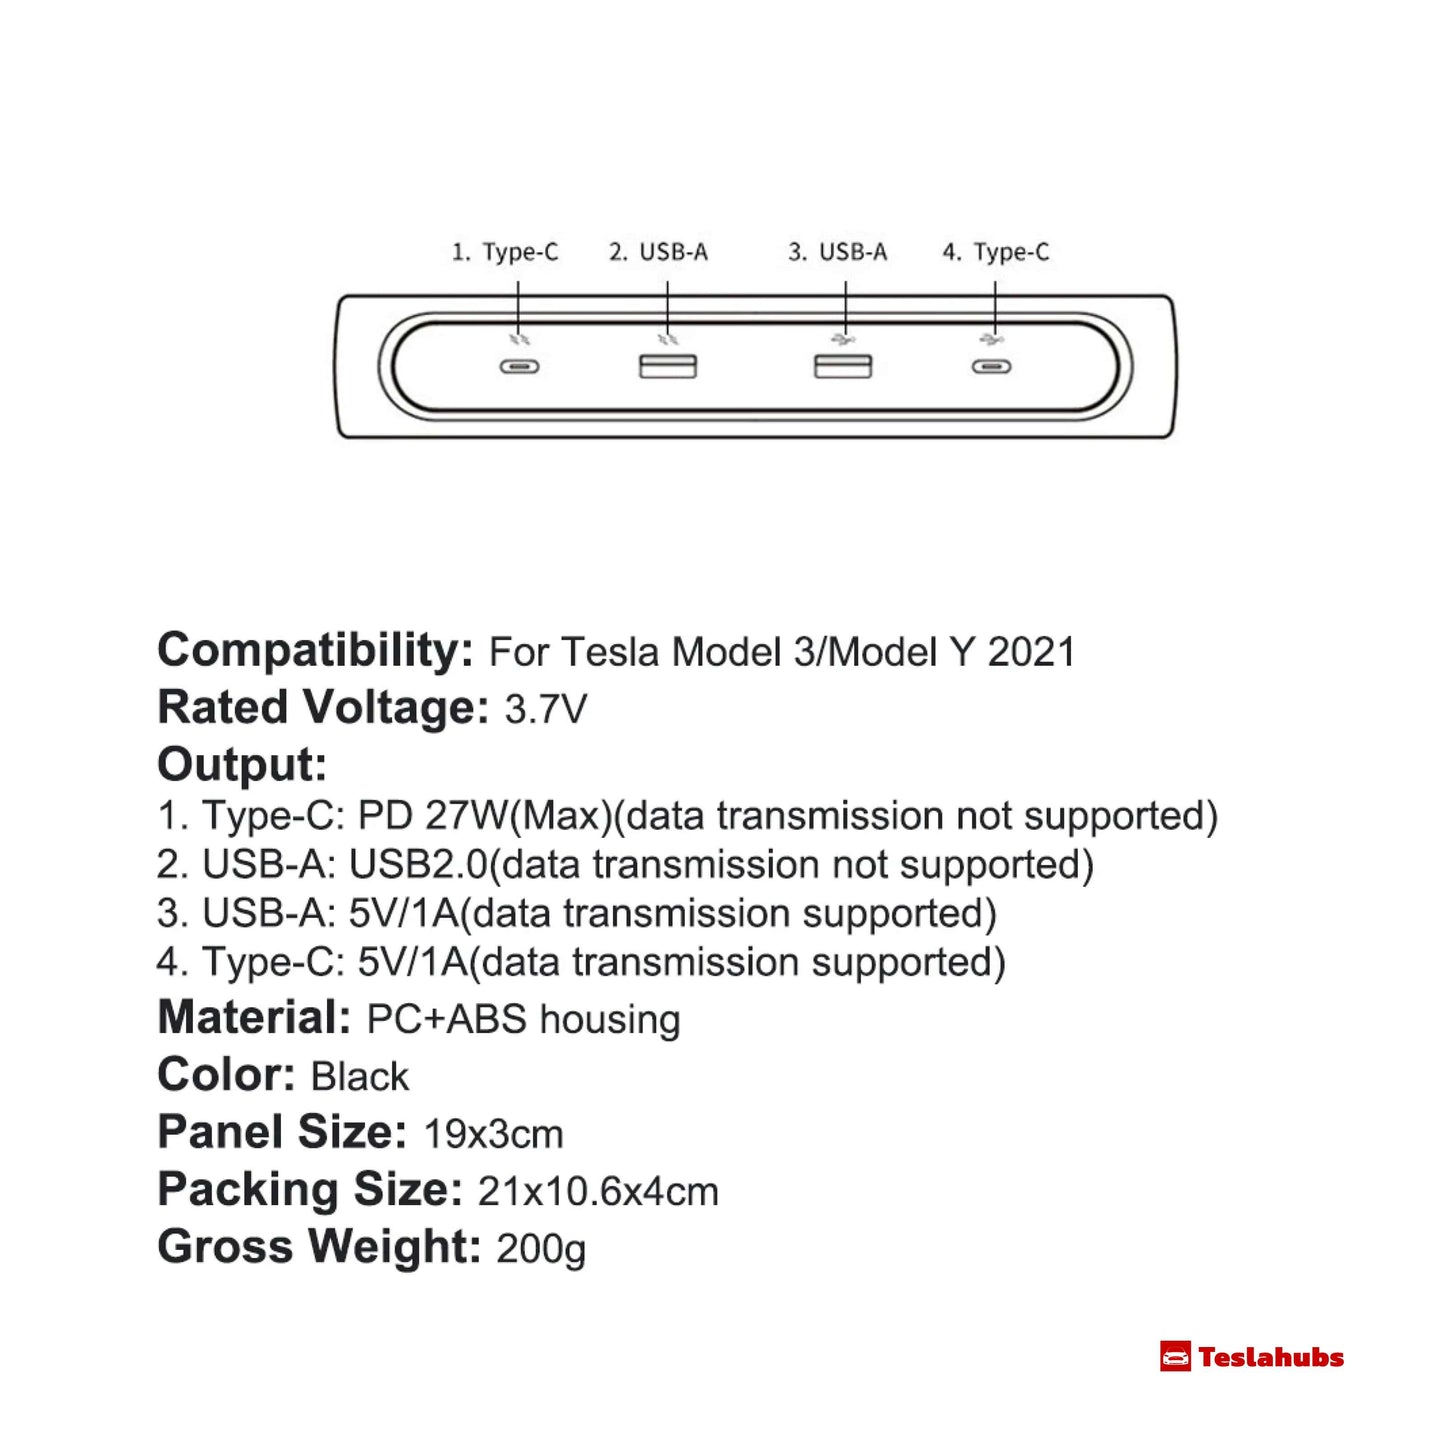 Teslahubs™ ElectroGlow Schnellladestation für Model 3 / Y 